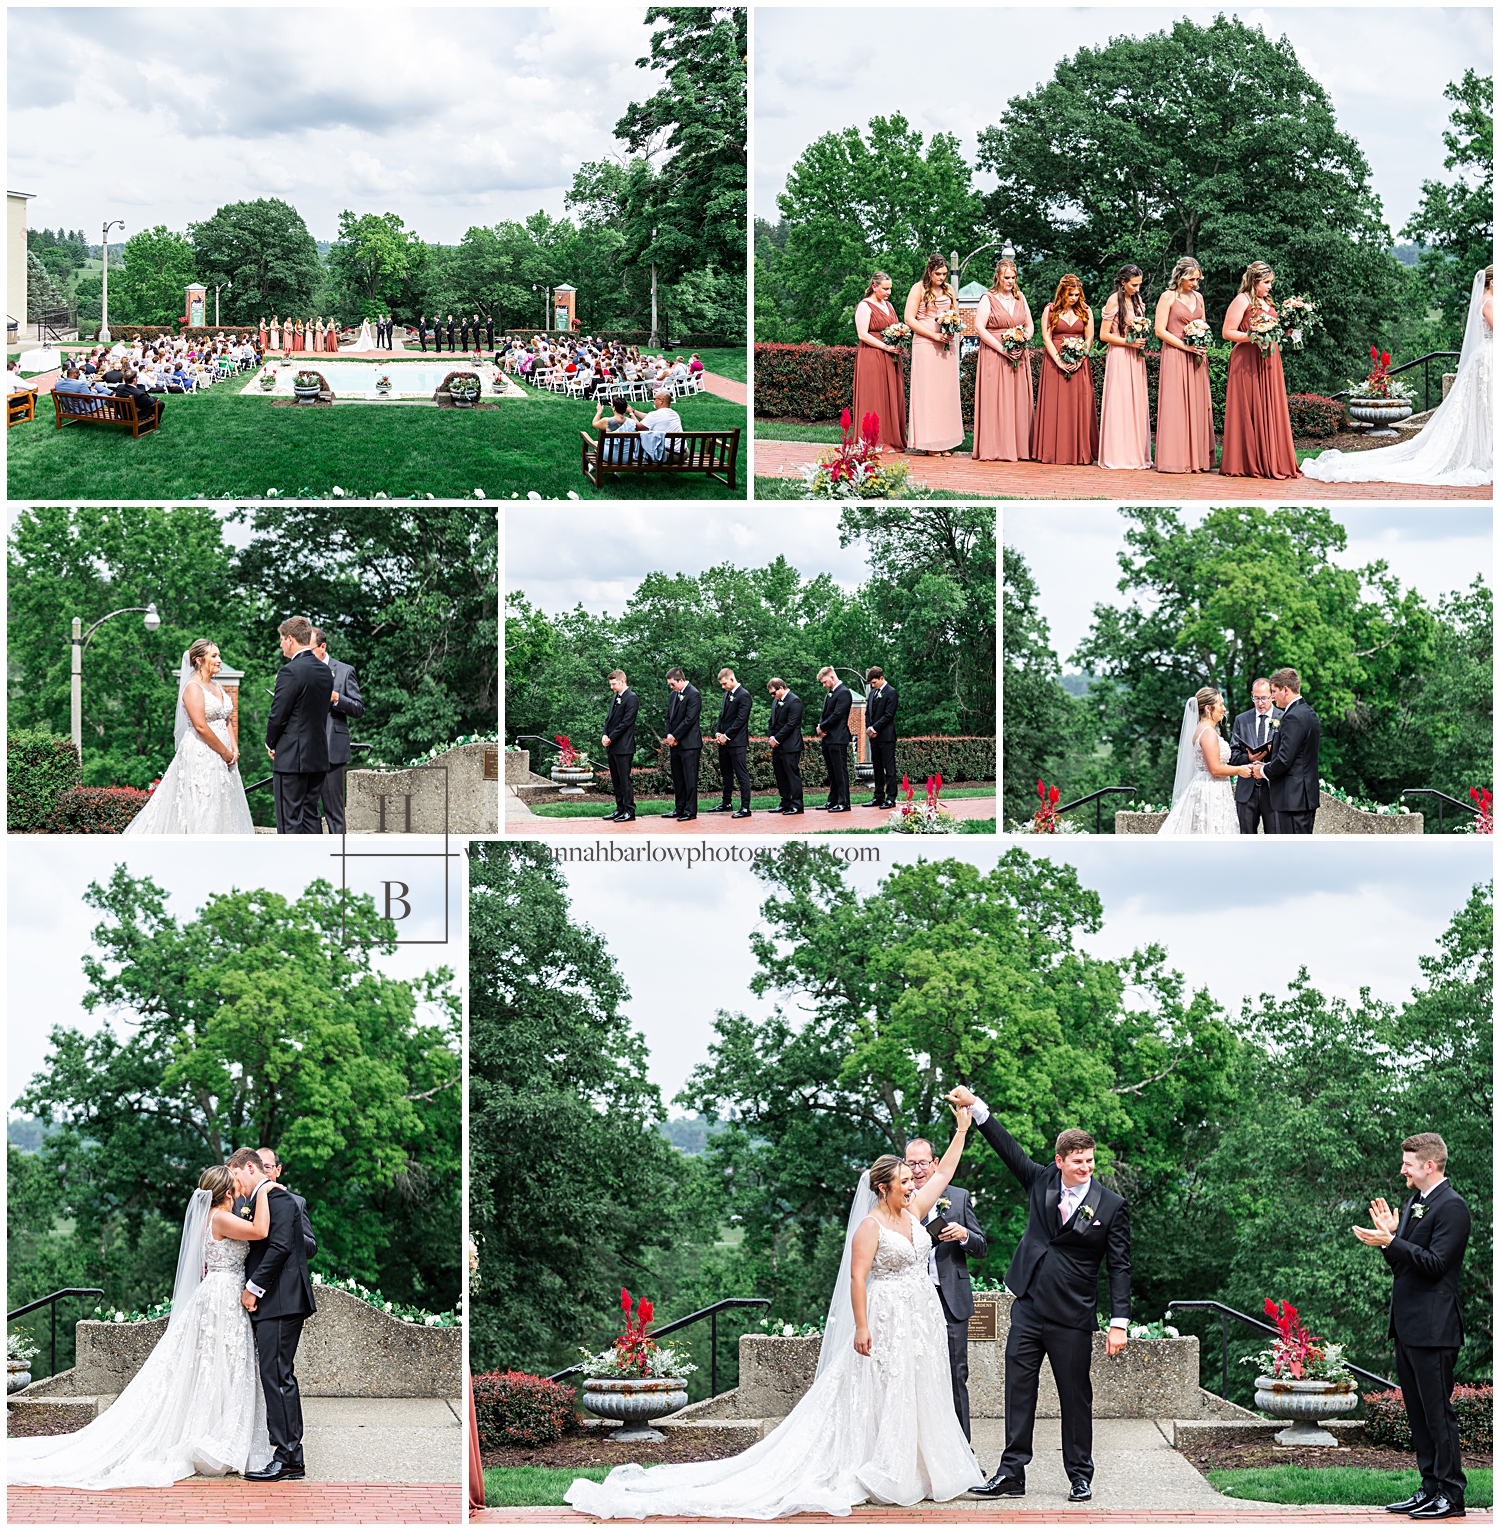 Collage of summer wedding photos at Oglebay's Formal Gardens